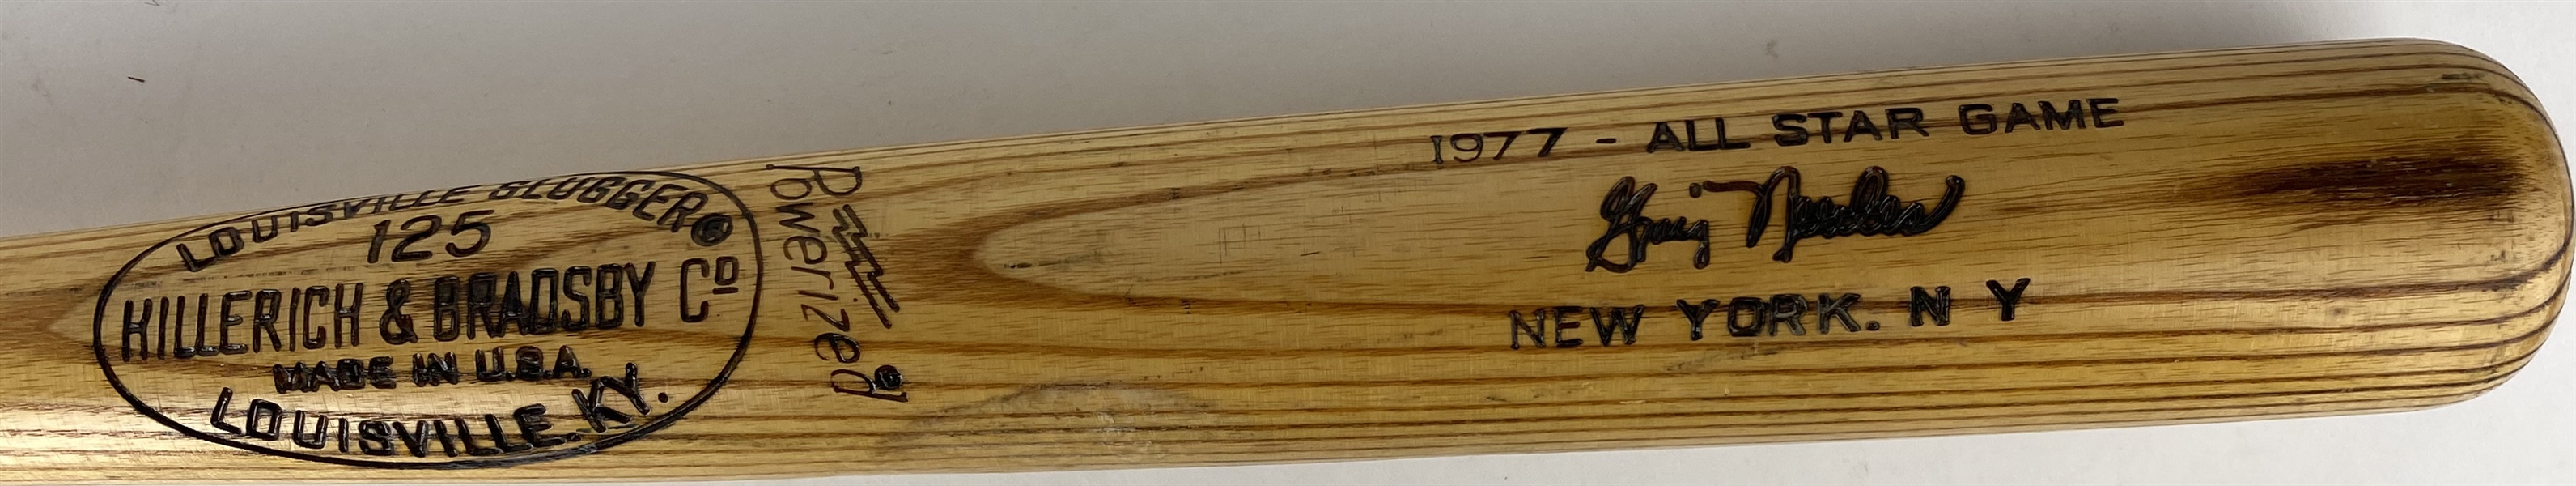 Graig Nettles Game Used 1977 All-Star Baseball Bat - PSA/DNA GU 8